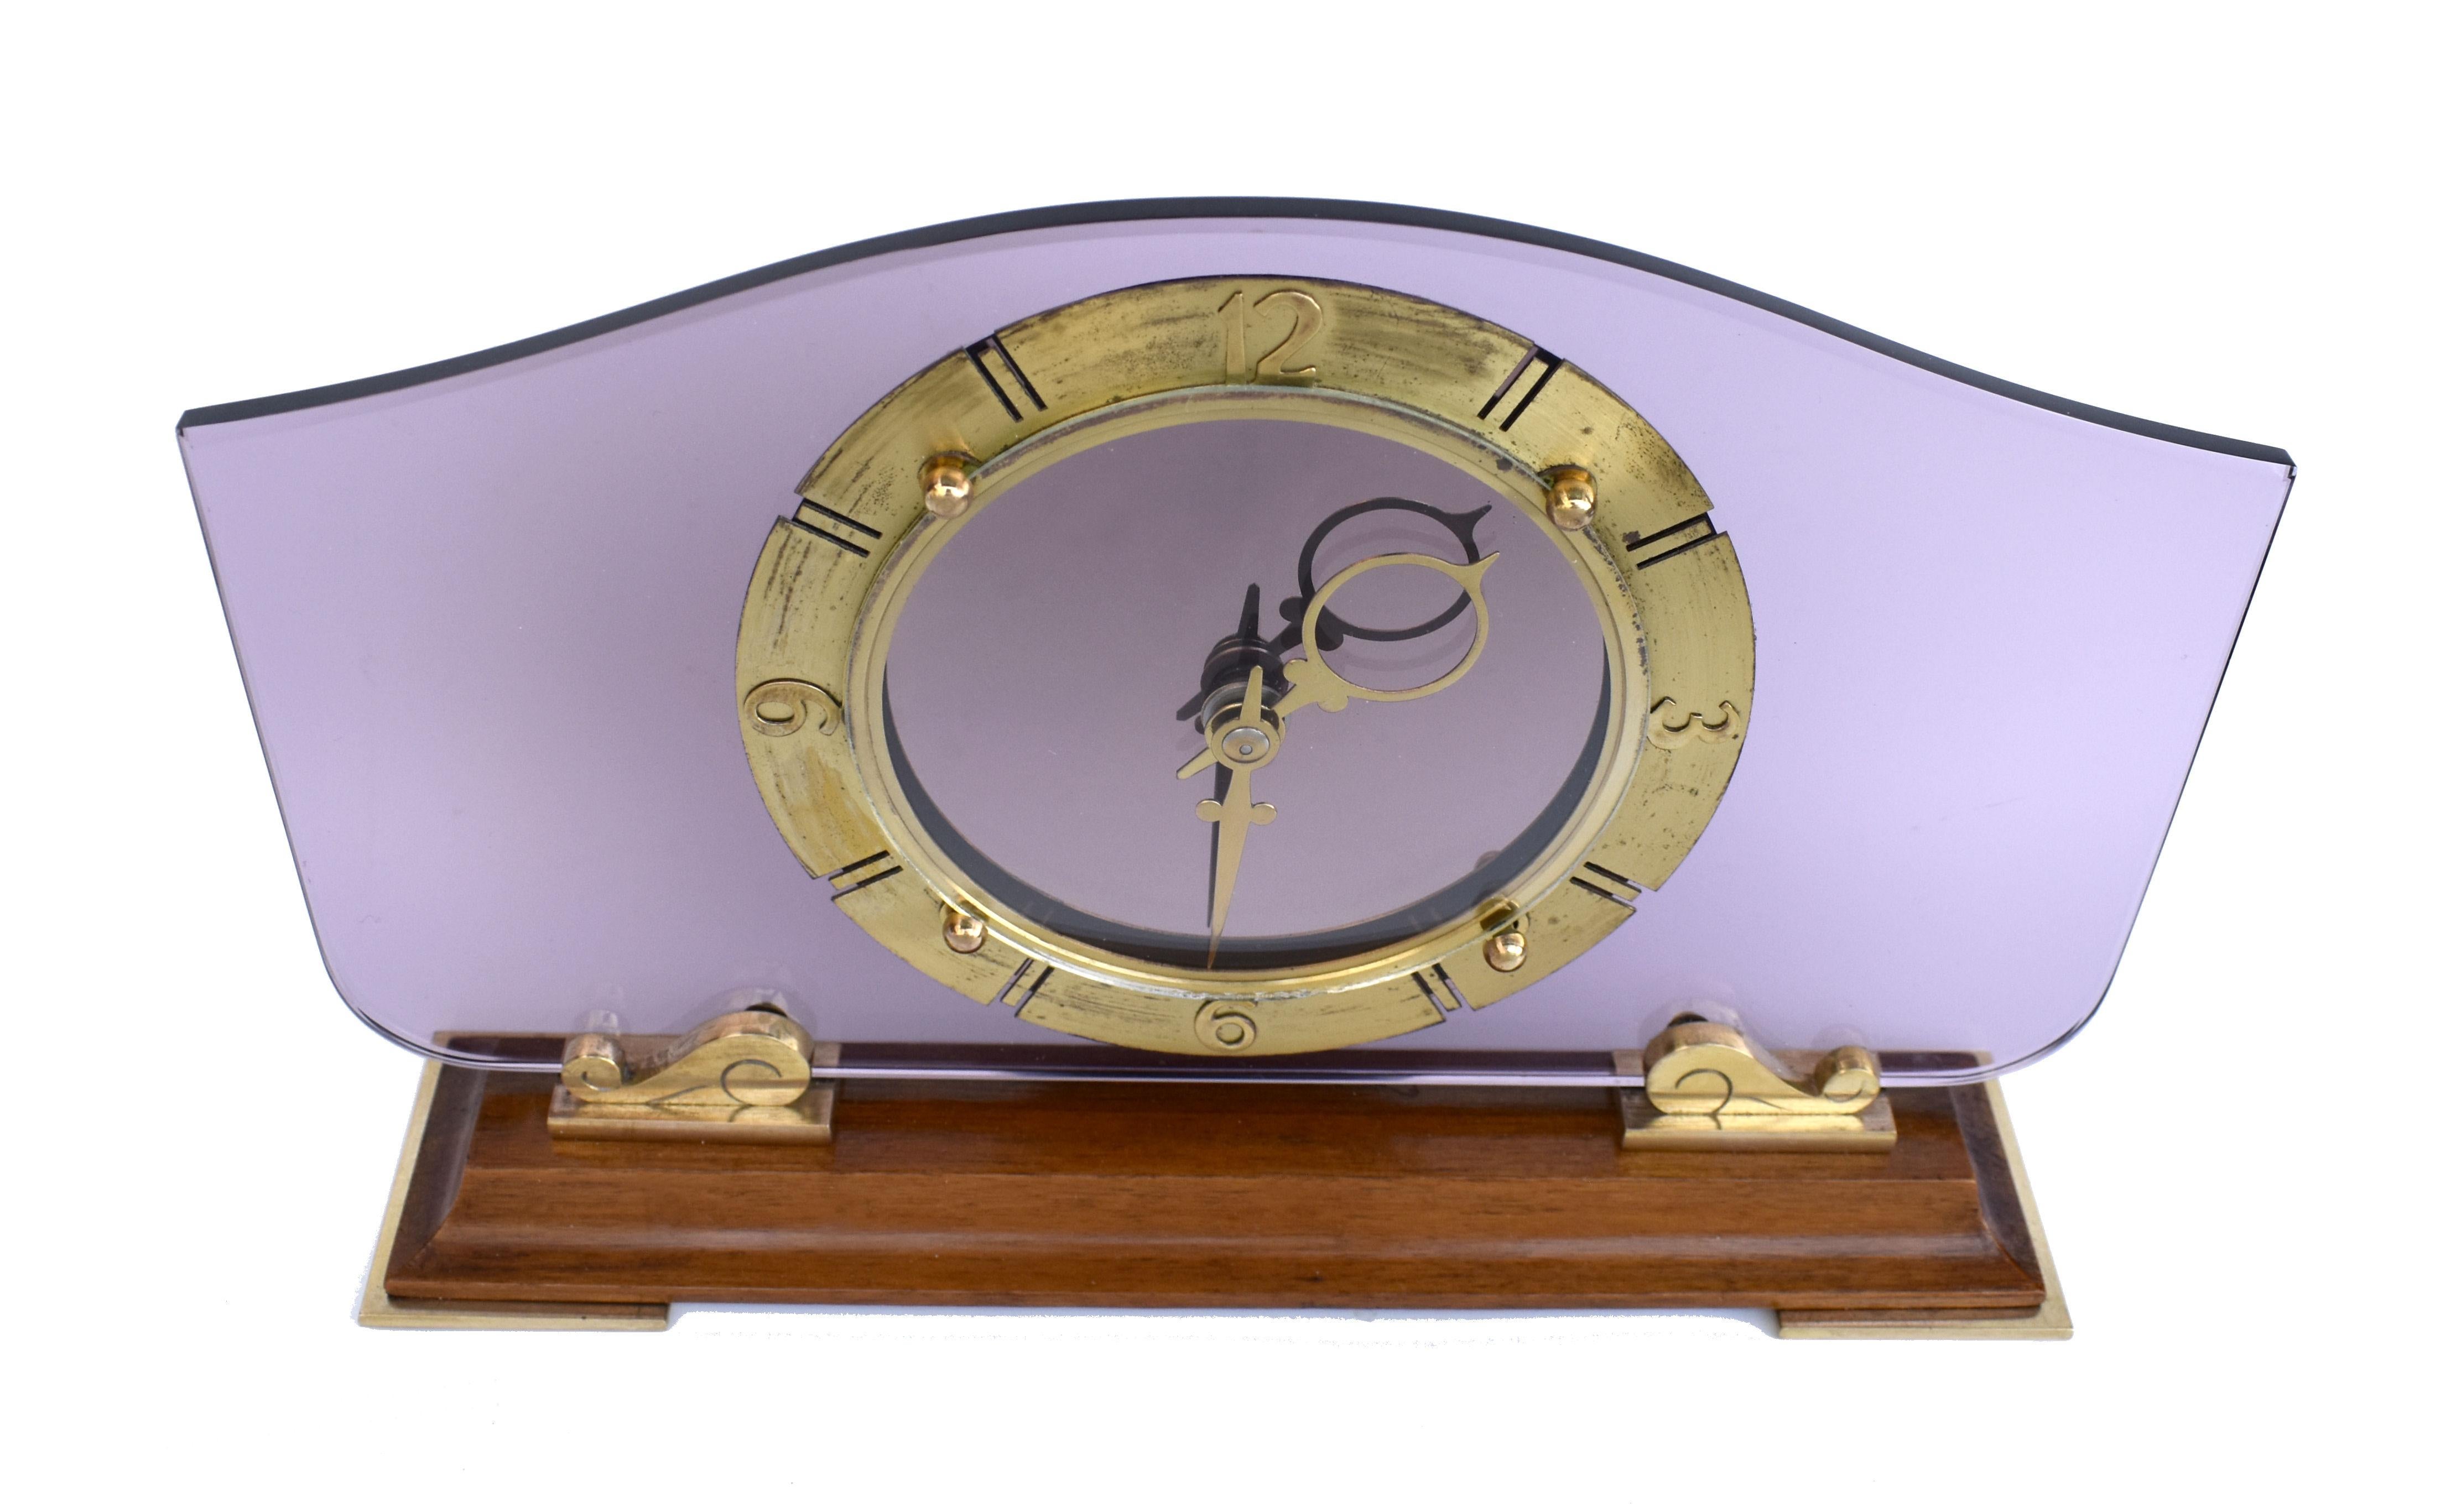 Pour votre considération est cette superbe Smiths verre et miroir 8 jours horloge dans un état entièrement entretenu.
Le cadre est constitué d'une base en bois moulé reposant sur des pad plats en laiton doré et d'une plaque de verre teinté de 5 mm